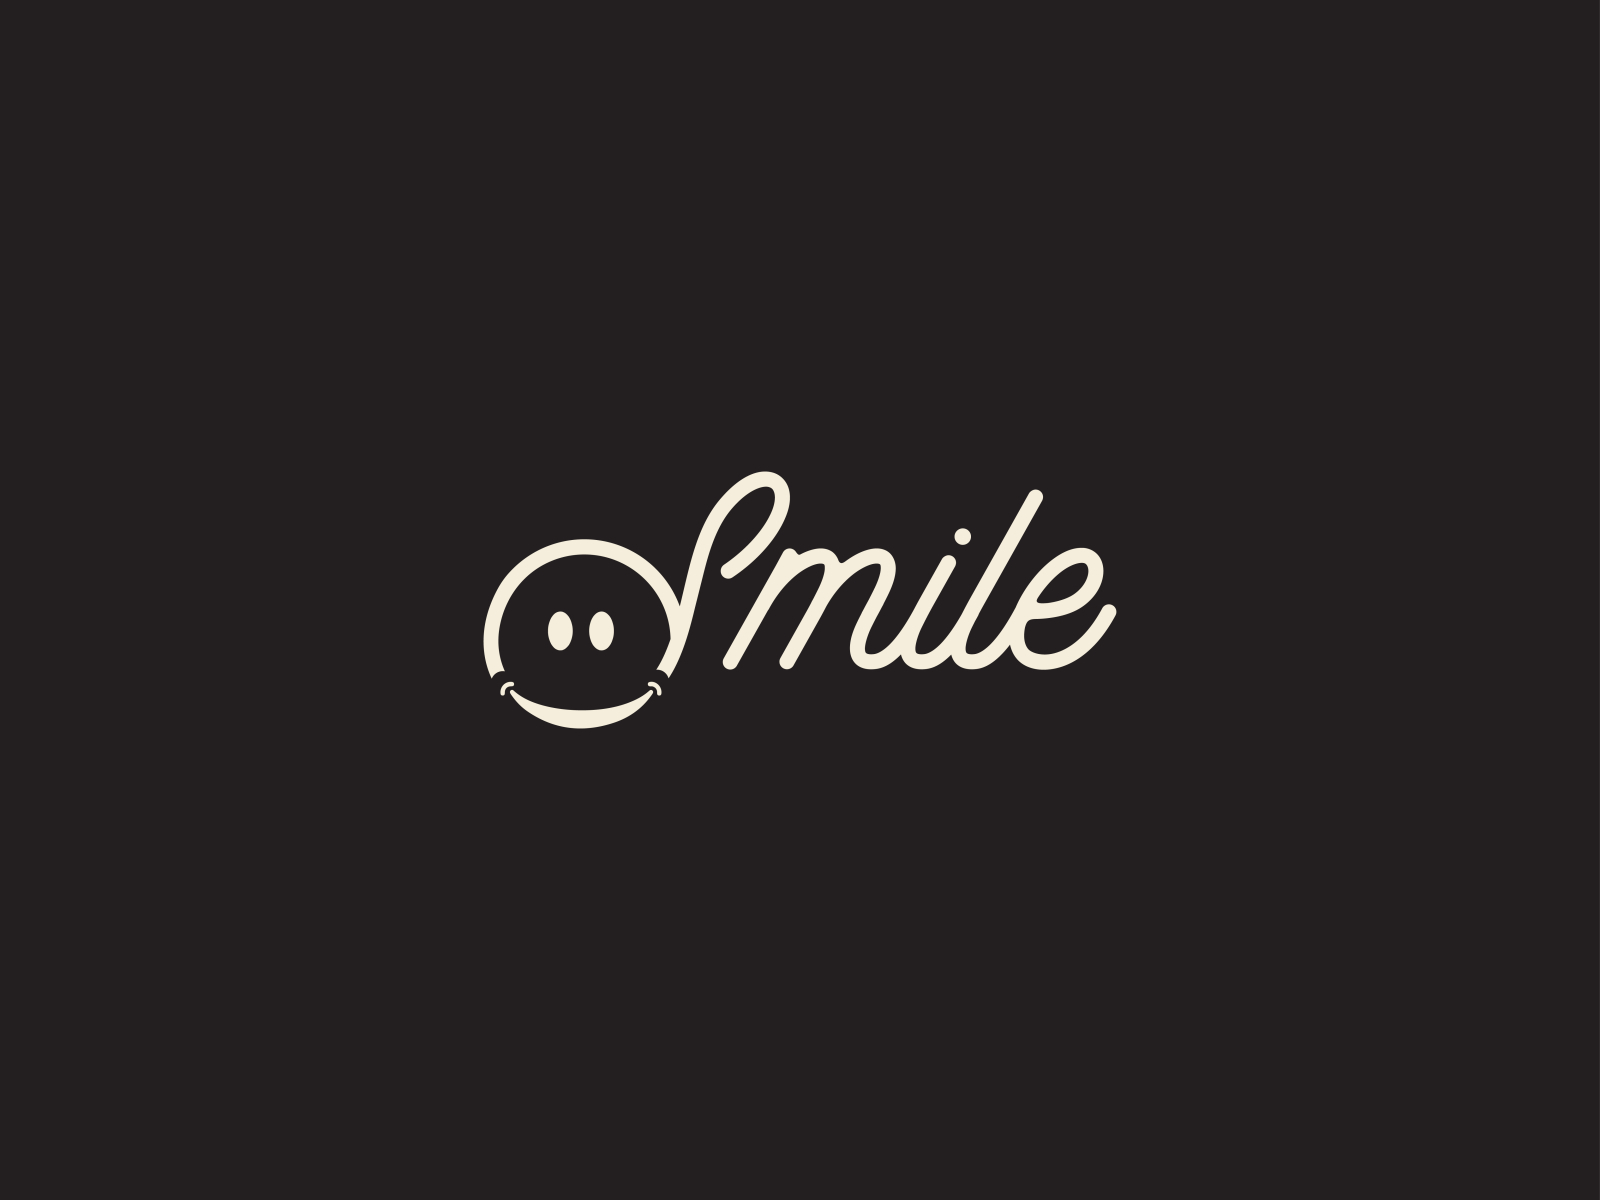 Smile logo by MILAD HOSSEN on Dribbble